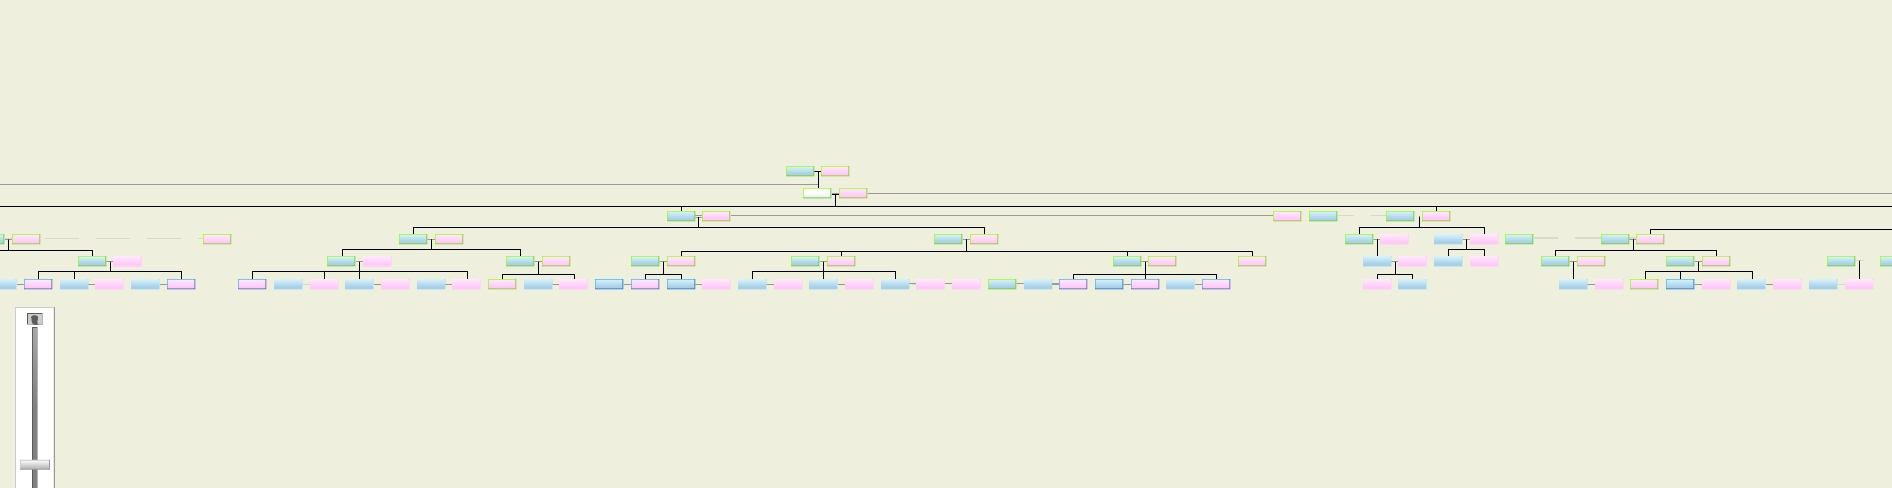 איך נראה עץ משפחה שיתופי - חלקו העליון של אילן היוחסין בעץ משפחה באתר Geni.com.